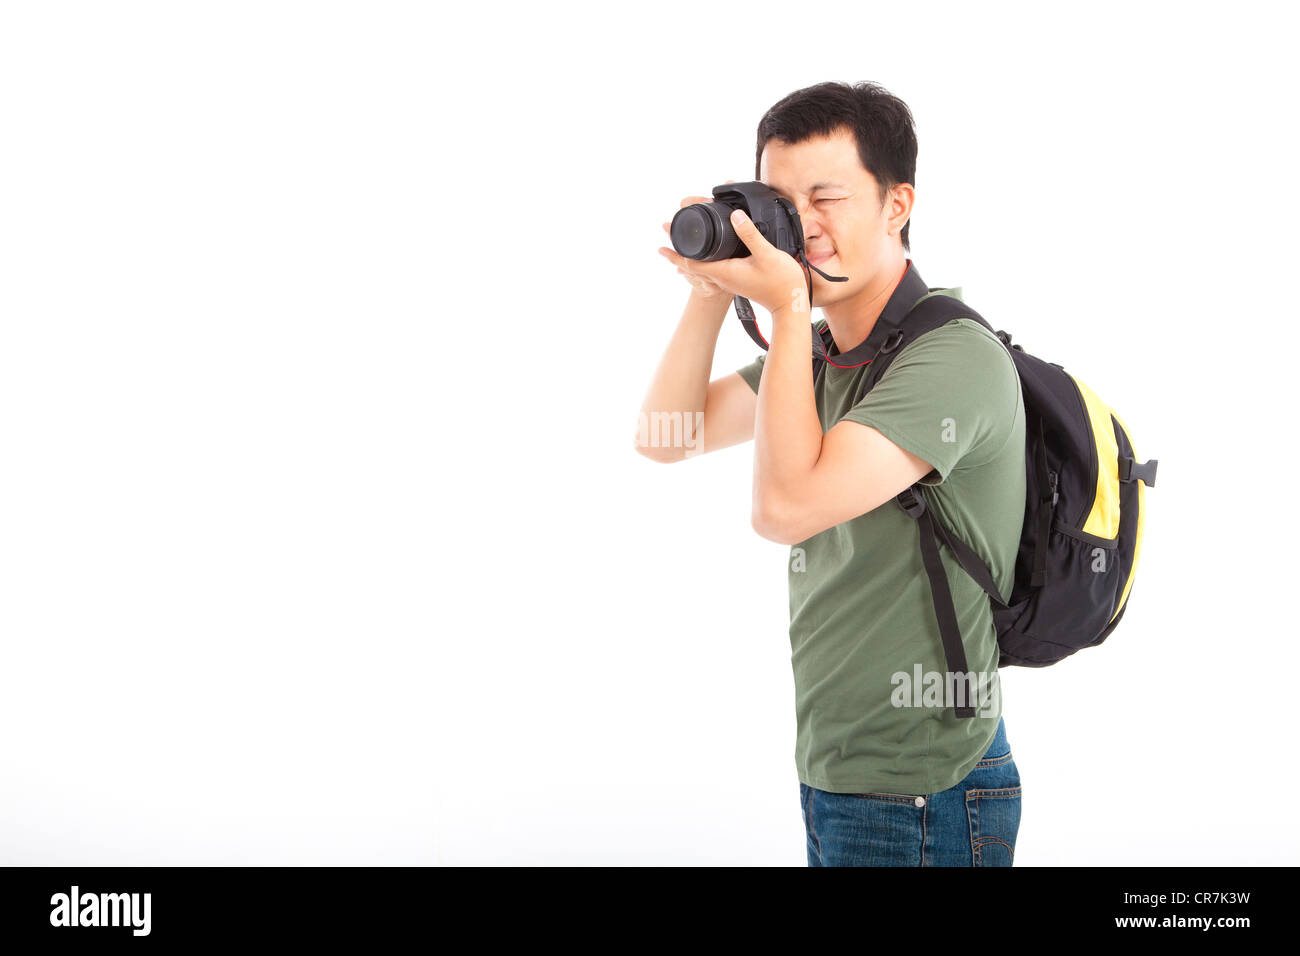 Jeune voyageur avec caméra photo Banque D'Images